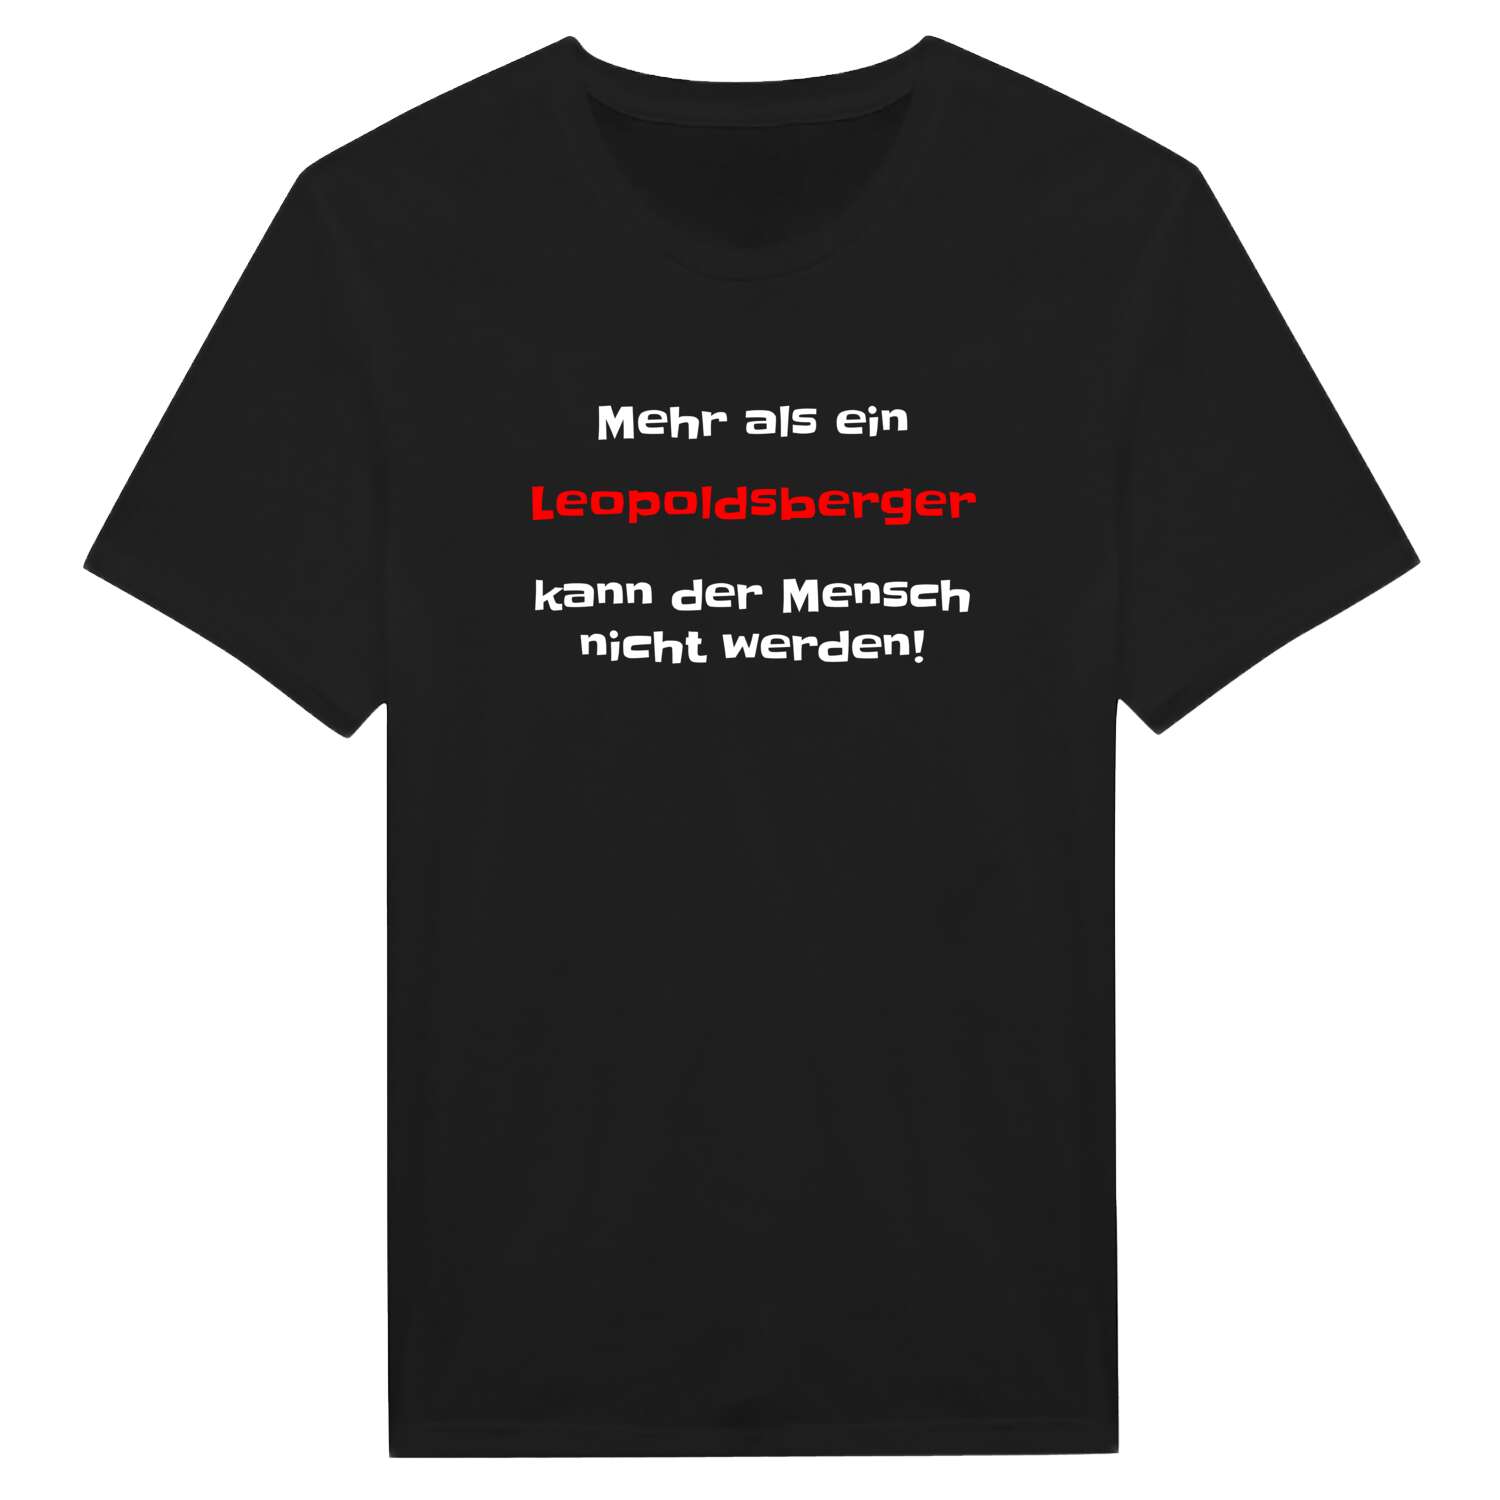 Leopoldsberg T-Shirt »Mehr als ein«